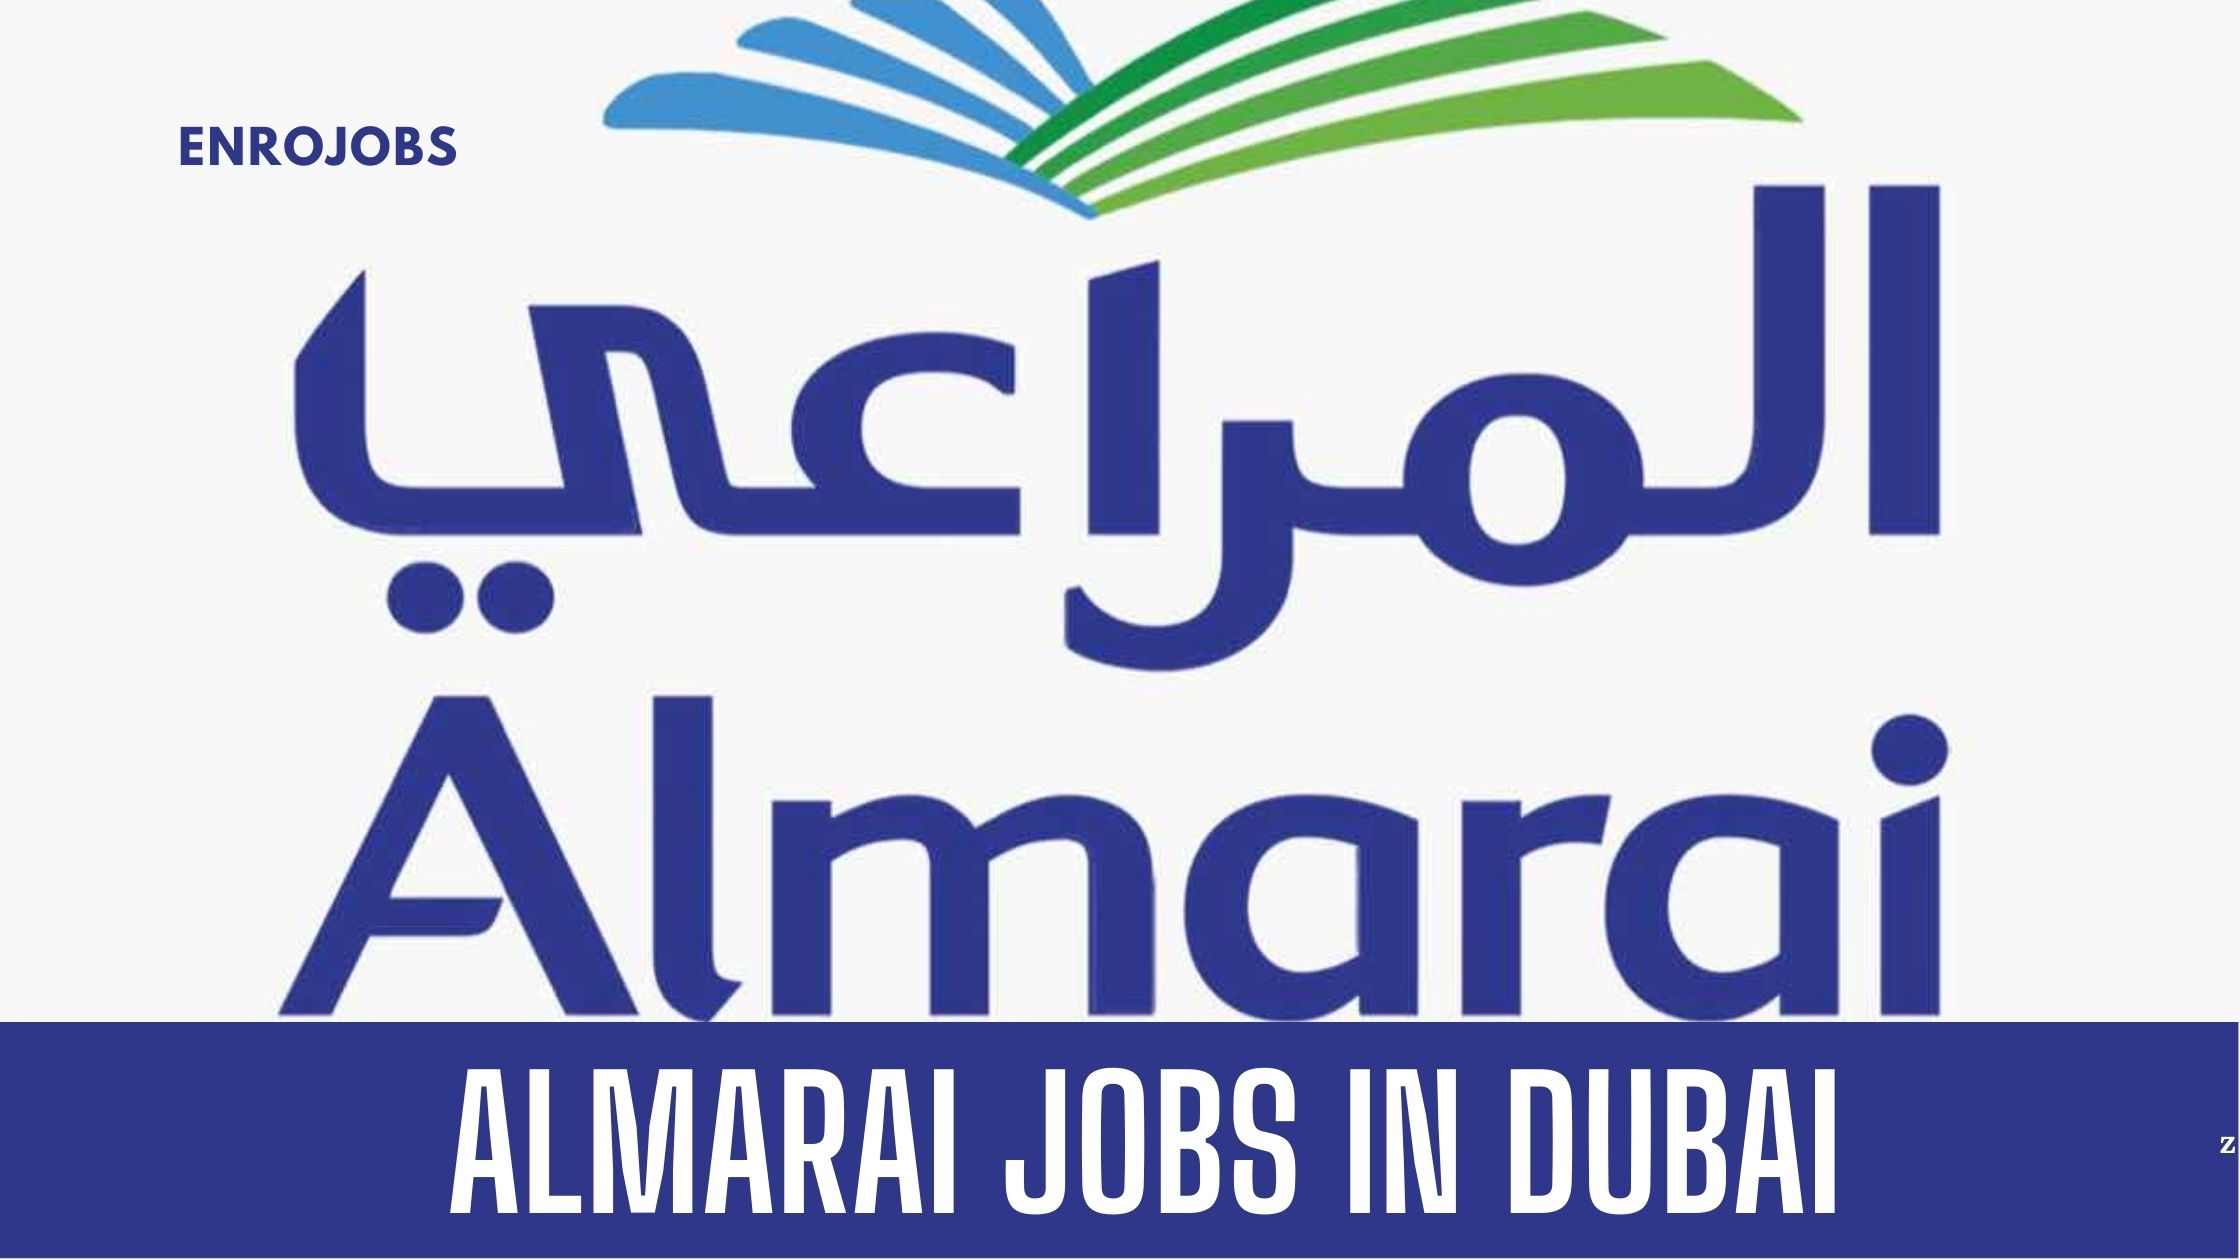 ALMARAI JOB